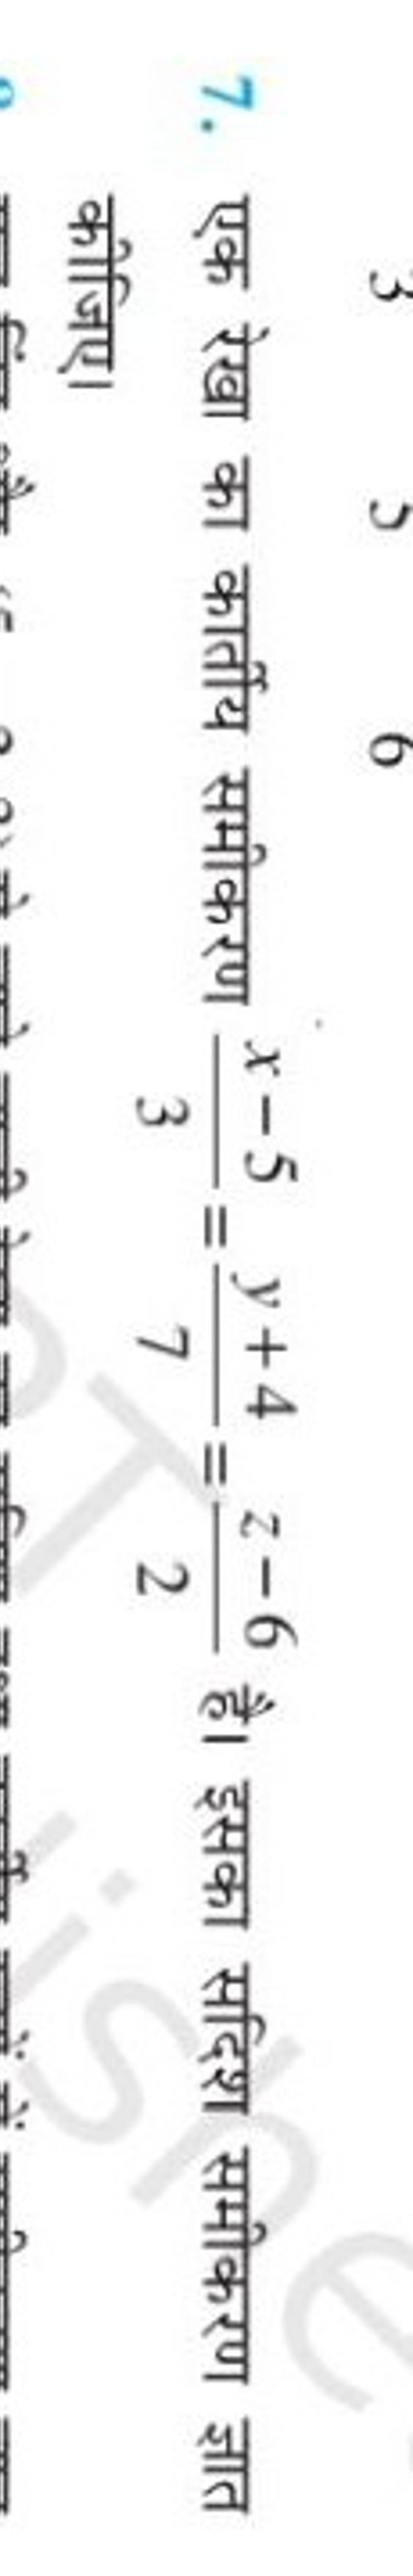 7. एक रेखा का कार्तीय समीकरण 3x−5​=7y+4​=2z−6​ है। इसका सदिश समीकरण ज्